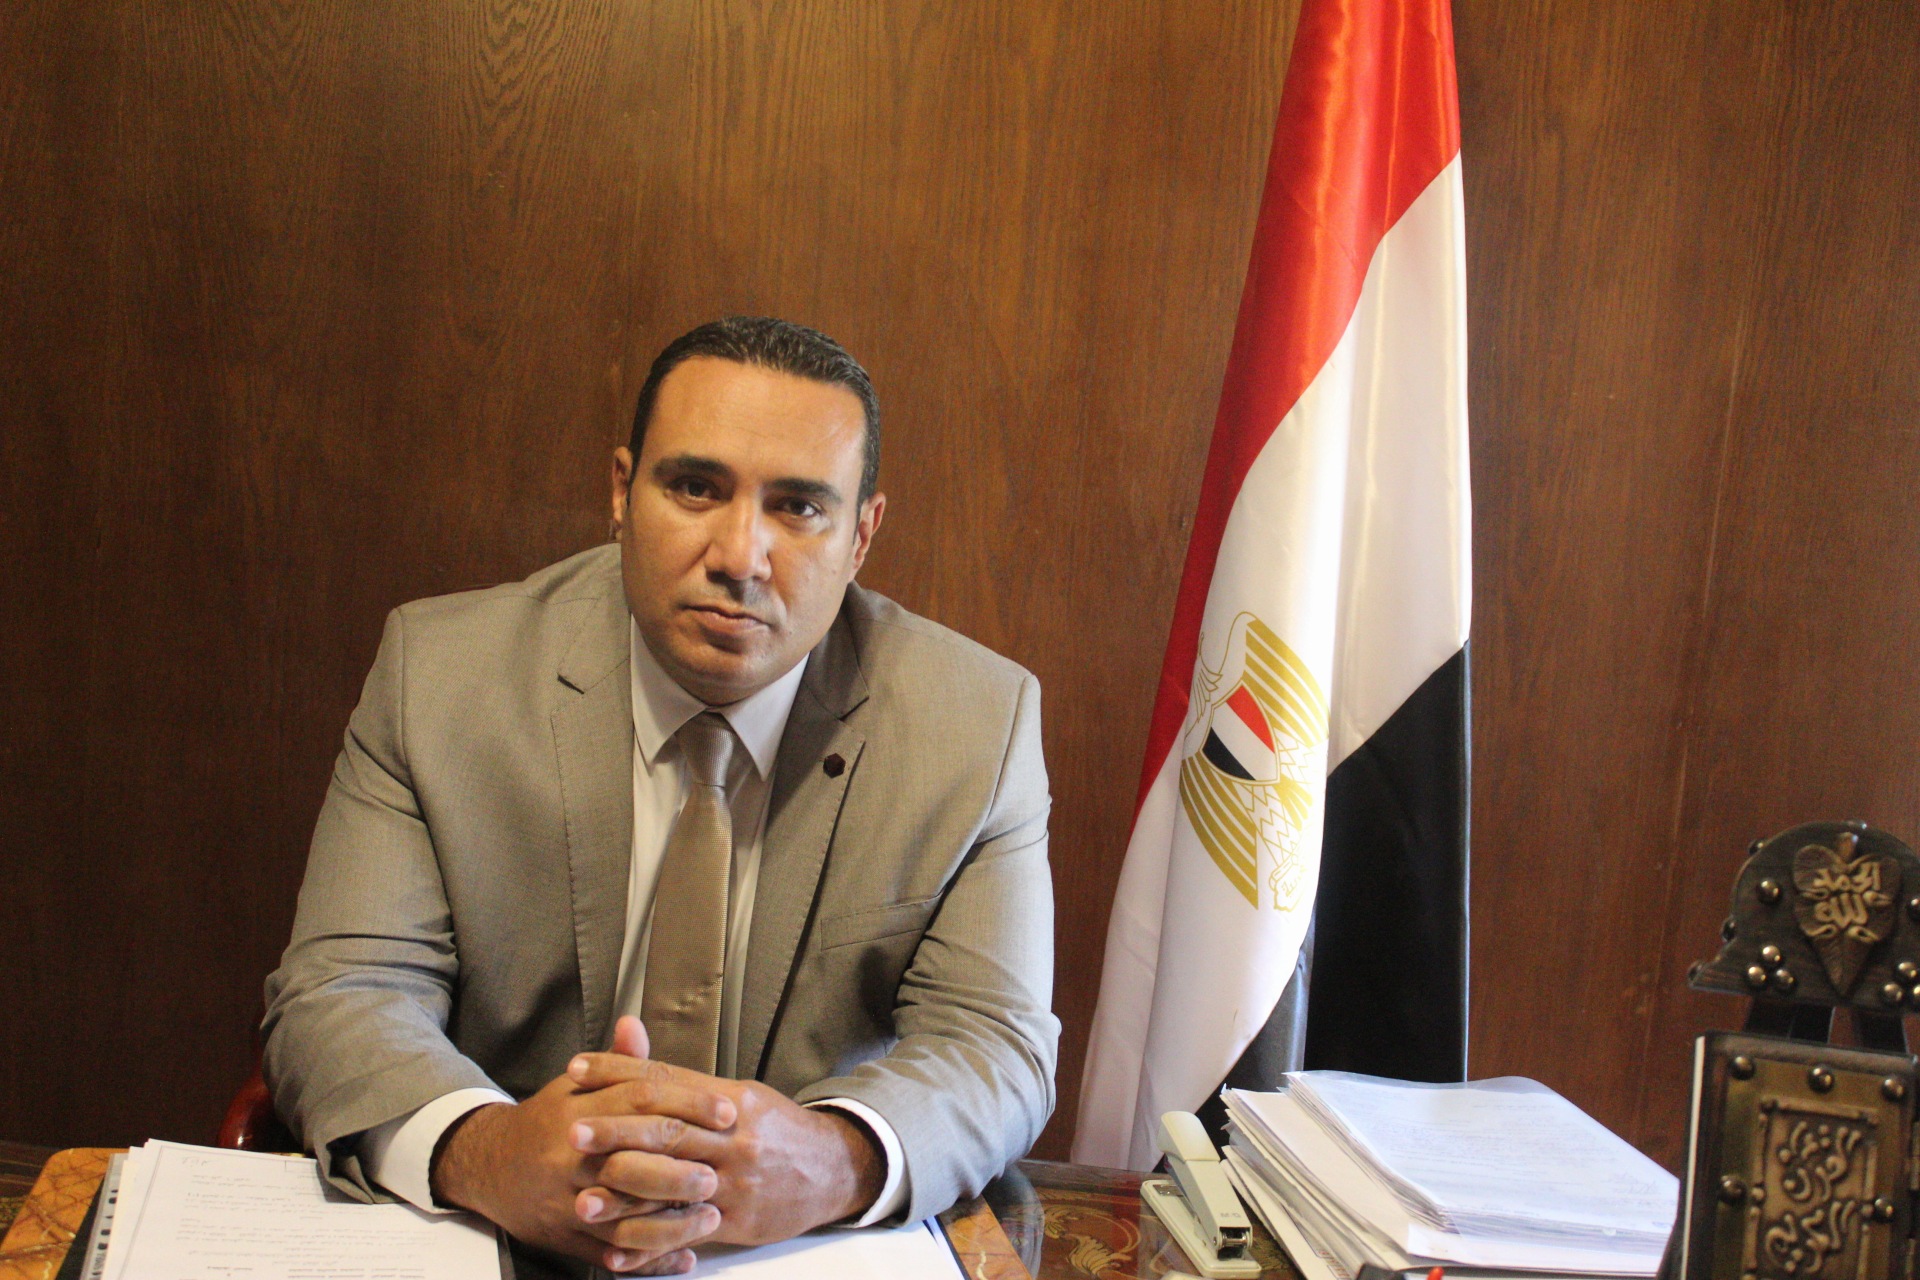 محمد مجدي صالح 